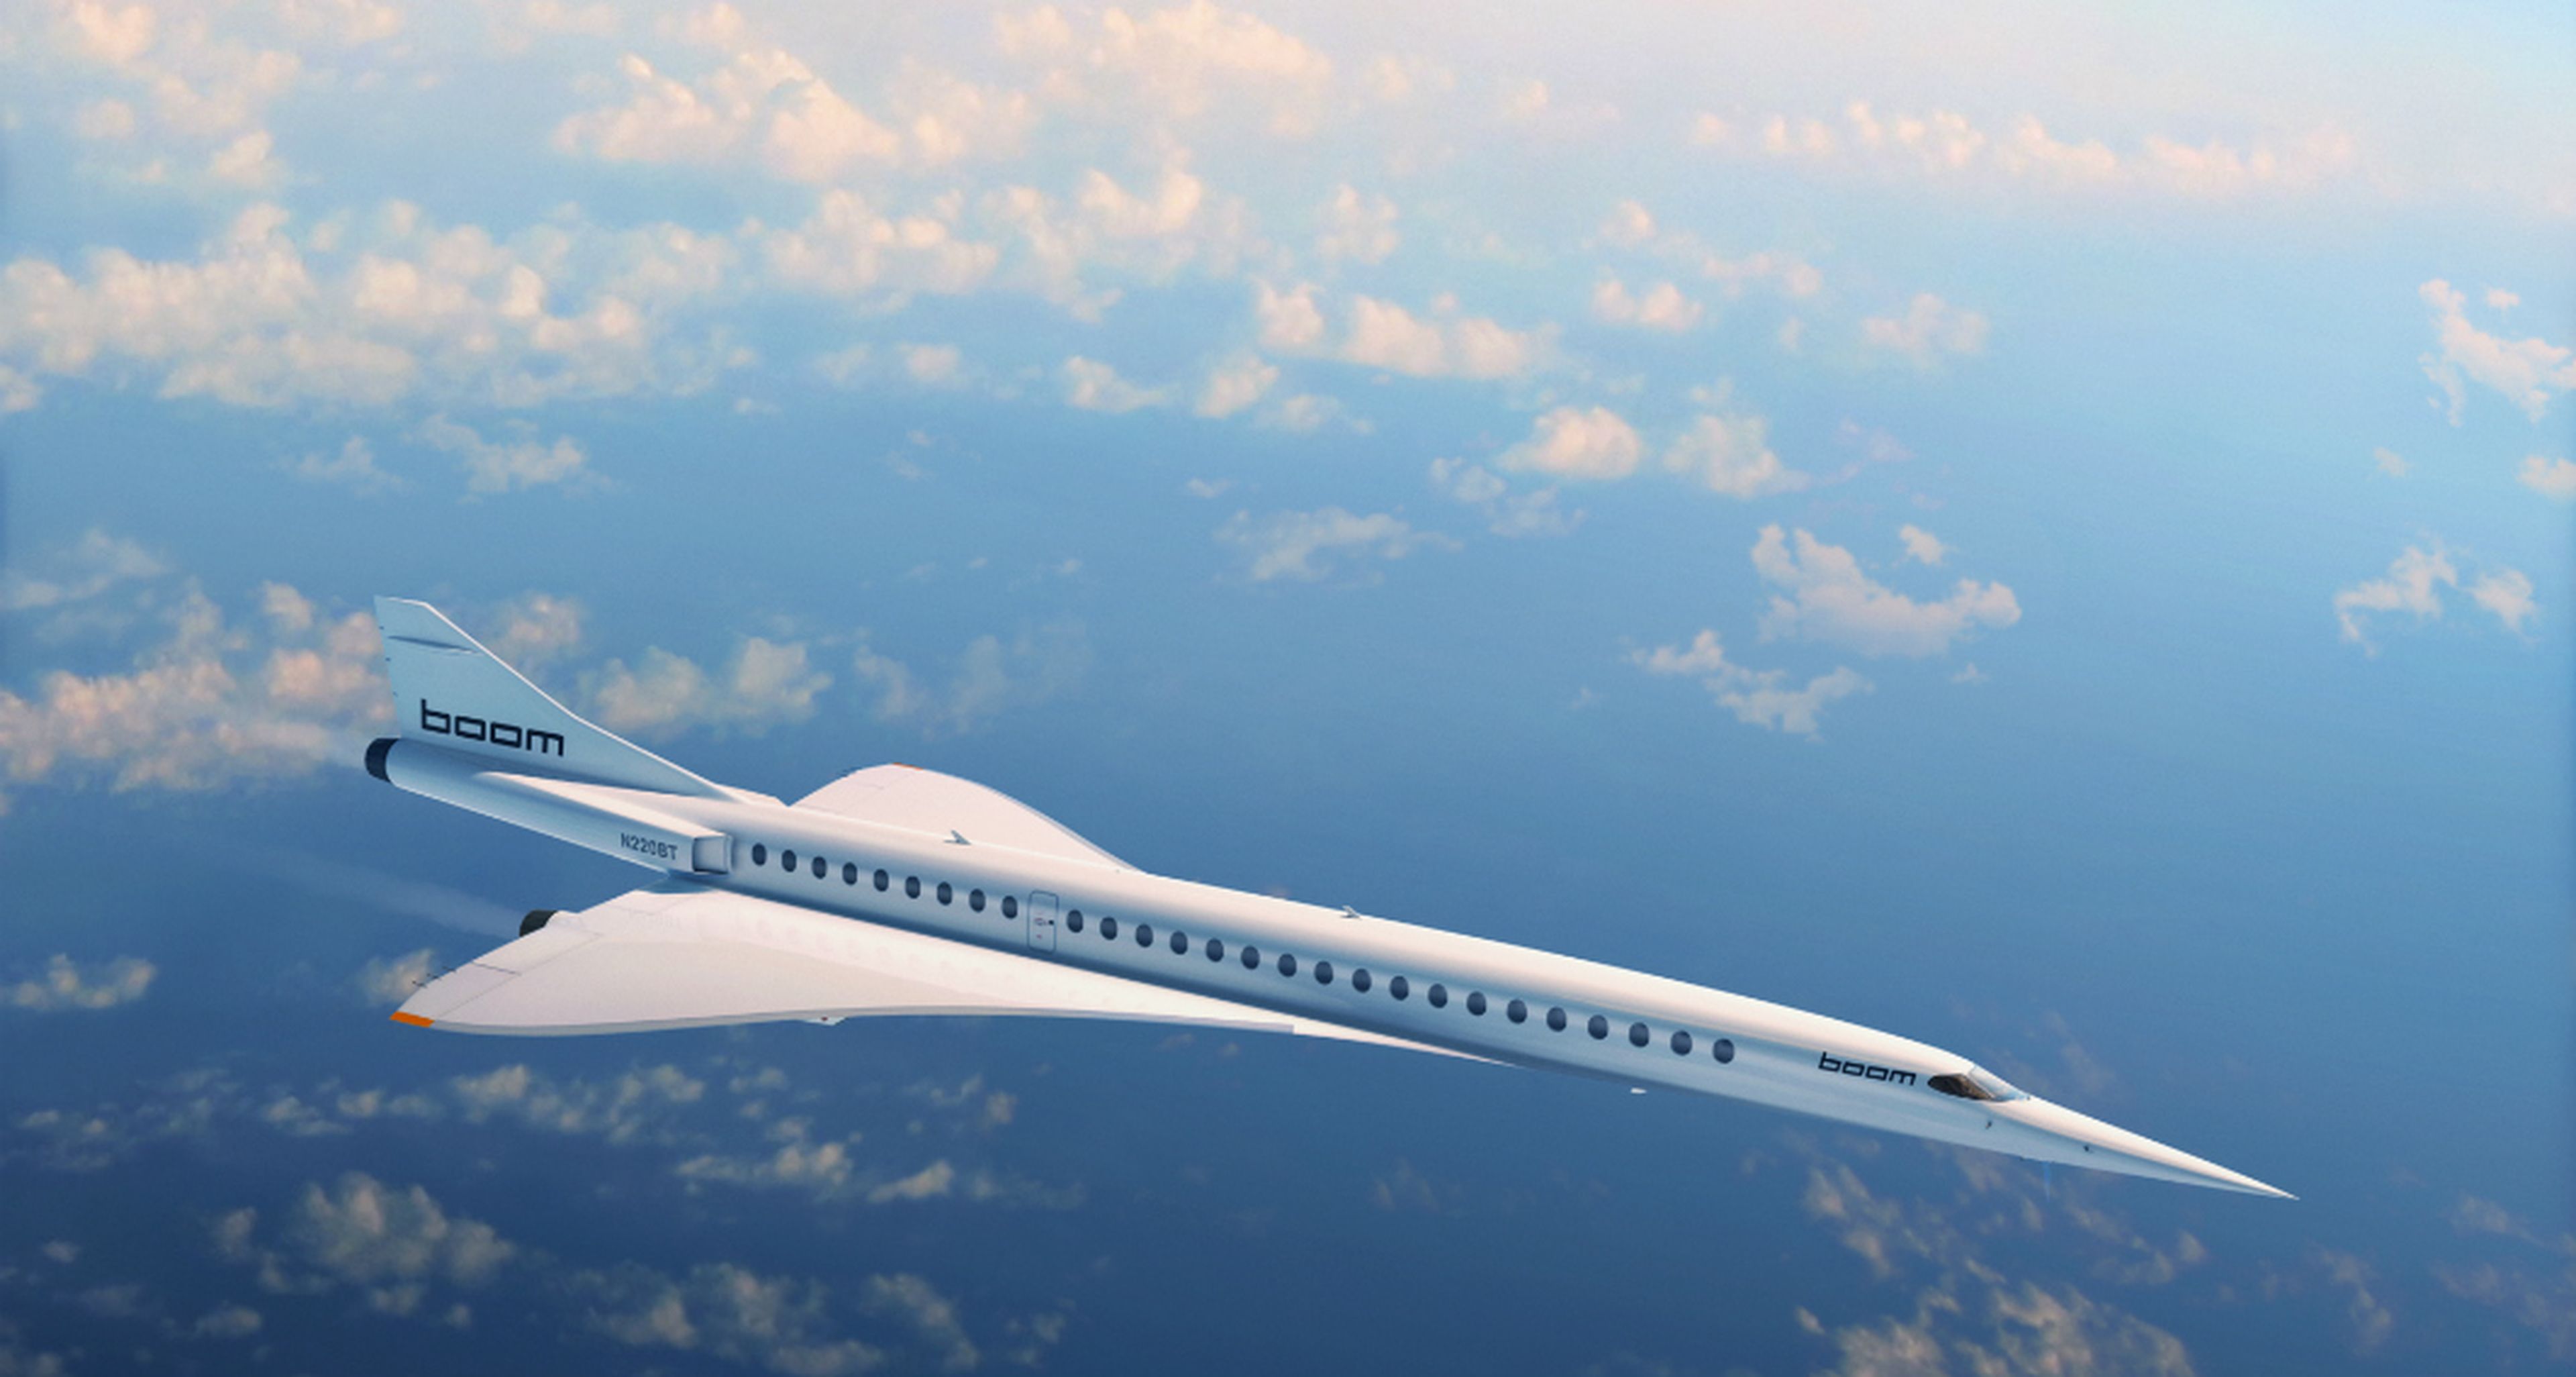 Ctrip, la plataforma de viajes más grande de China, invierte en el avión supersónico Boom para explotarlo comercialmente en el mercado aéreo en China.